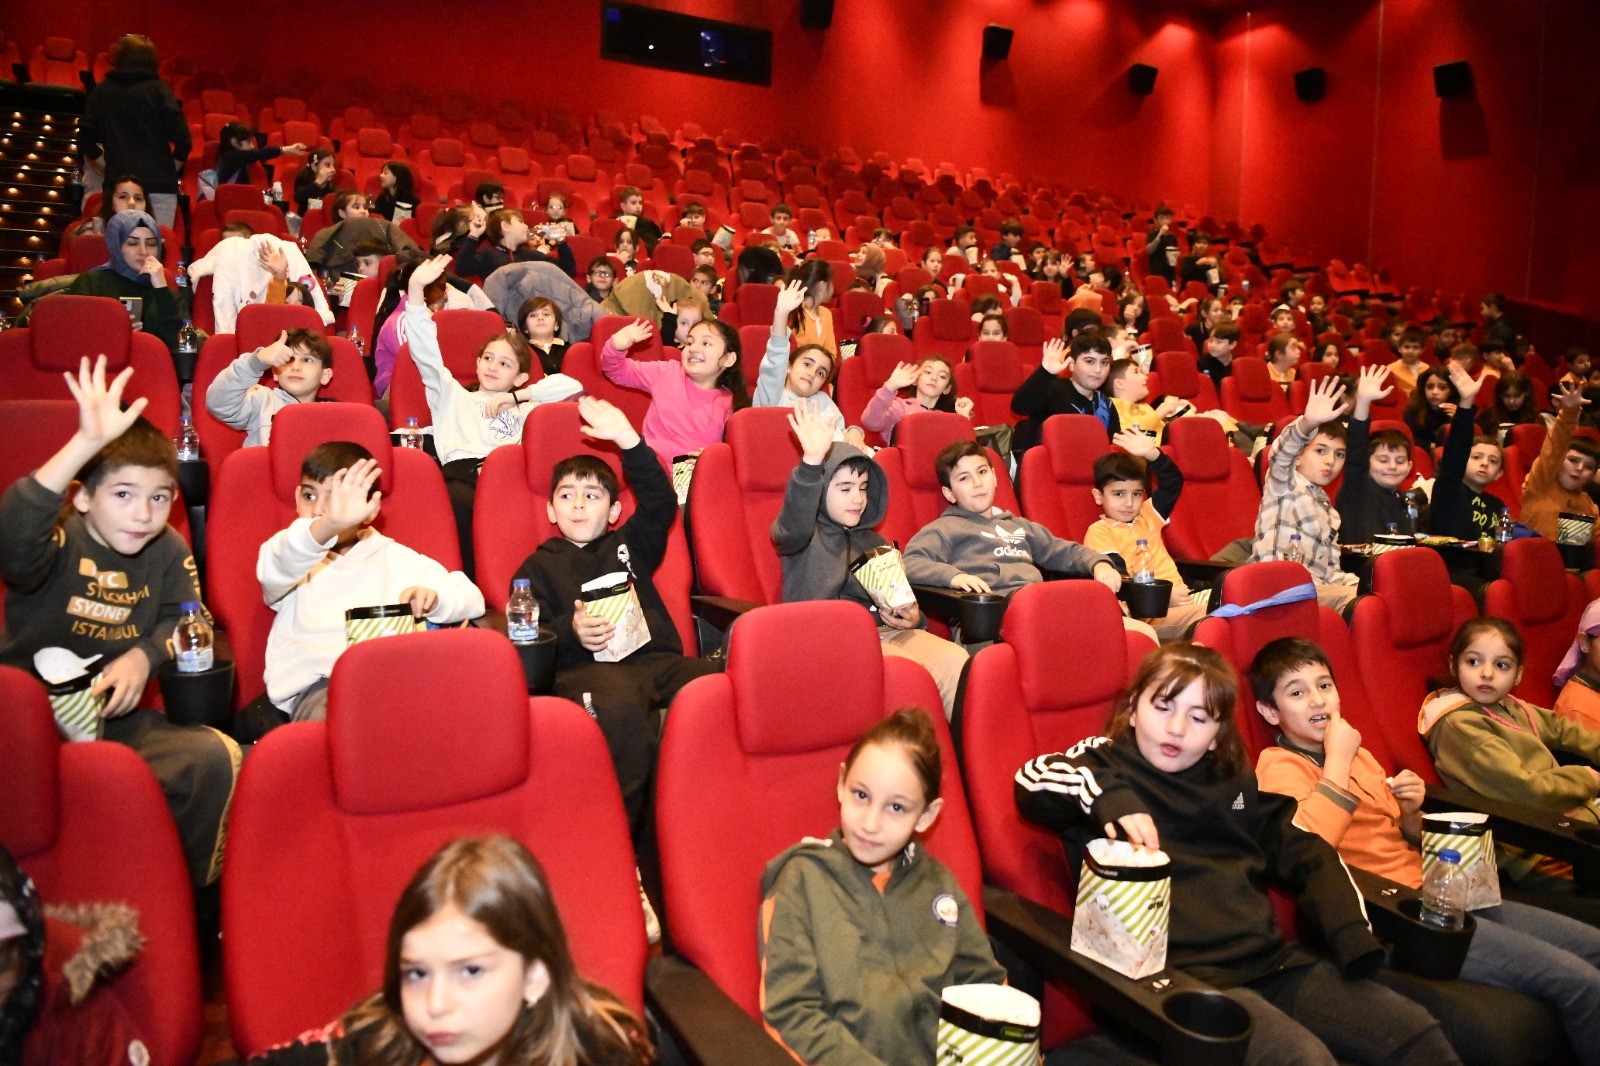 Samsun’da bin öğrenci ilk kez sinemada film izledi